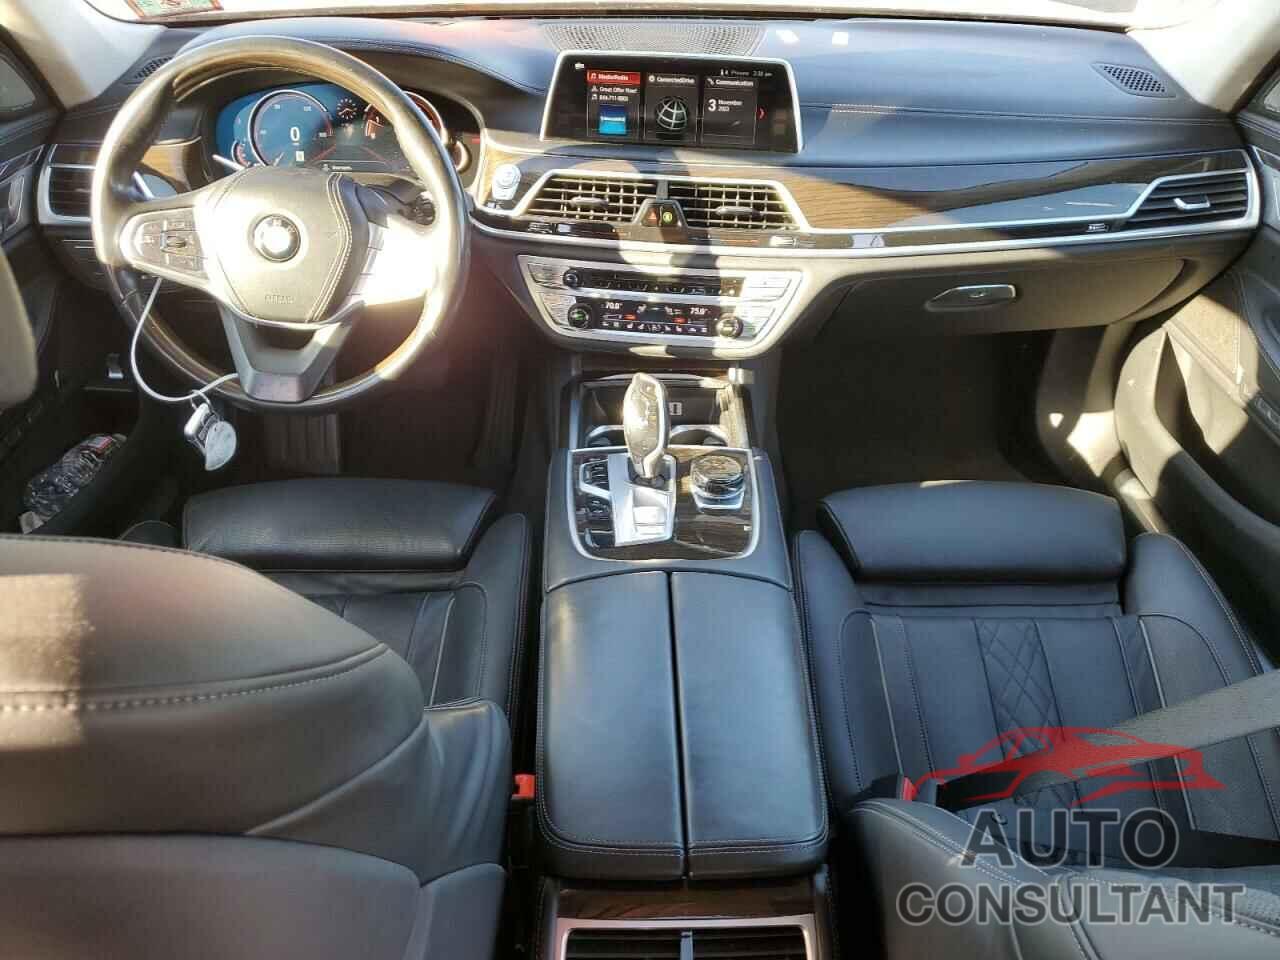 BMW 7 SERIES 2018 - WBA7F2C52JG423863